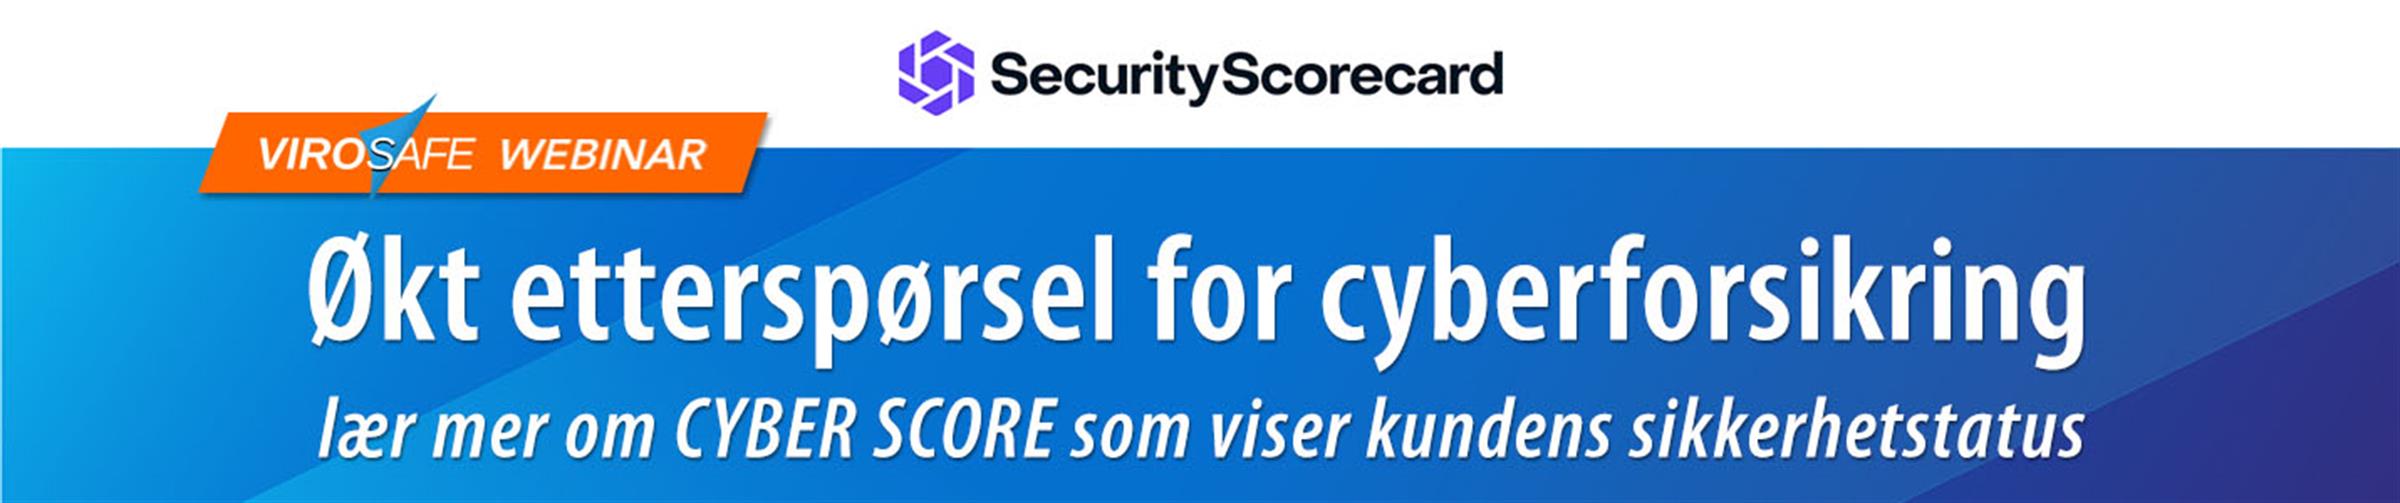 Webinar SecurityScorecard